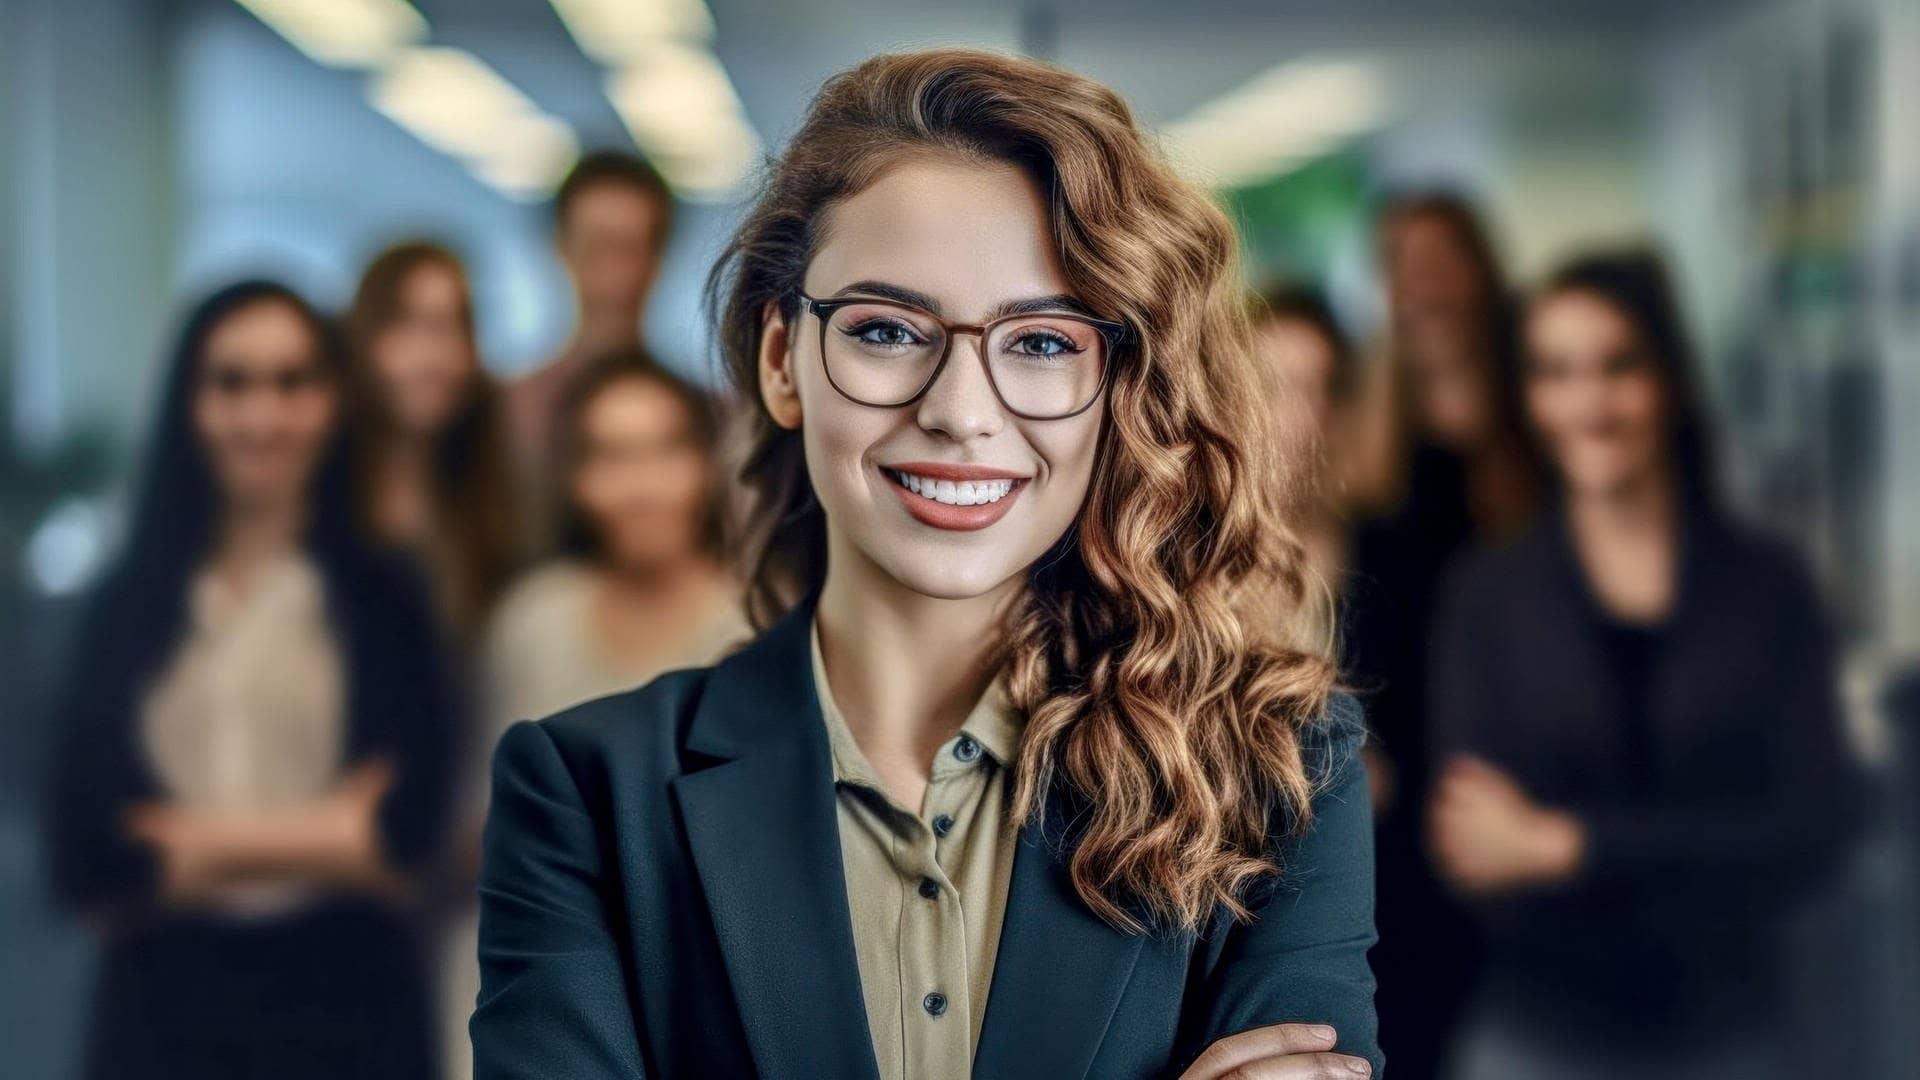 Junge Frau im Business-Outfit mit Bluse und Brille steht in einem Büro-Komplex, hinter ihr weitere Mitarbeiter. sie lächelt zufrieden. (Foto: Adobe Stock, Korea Saii)